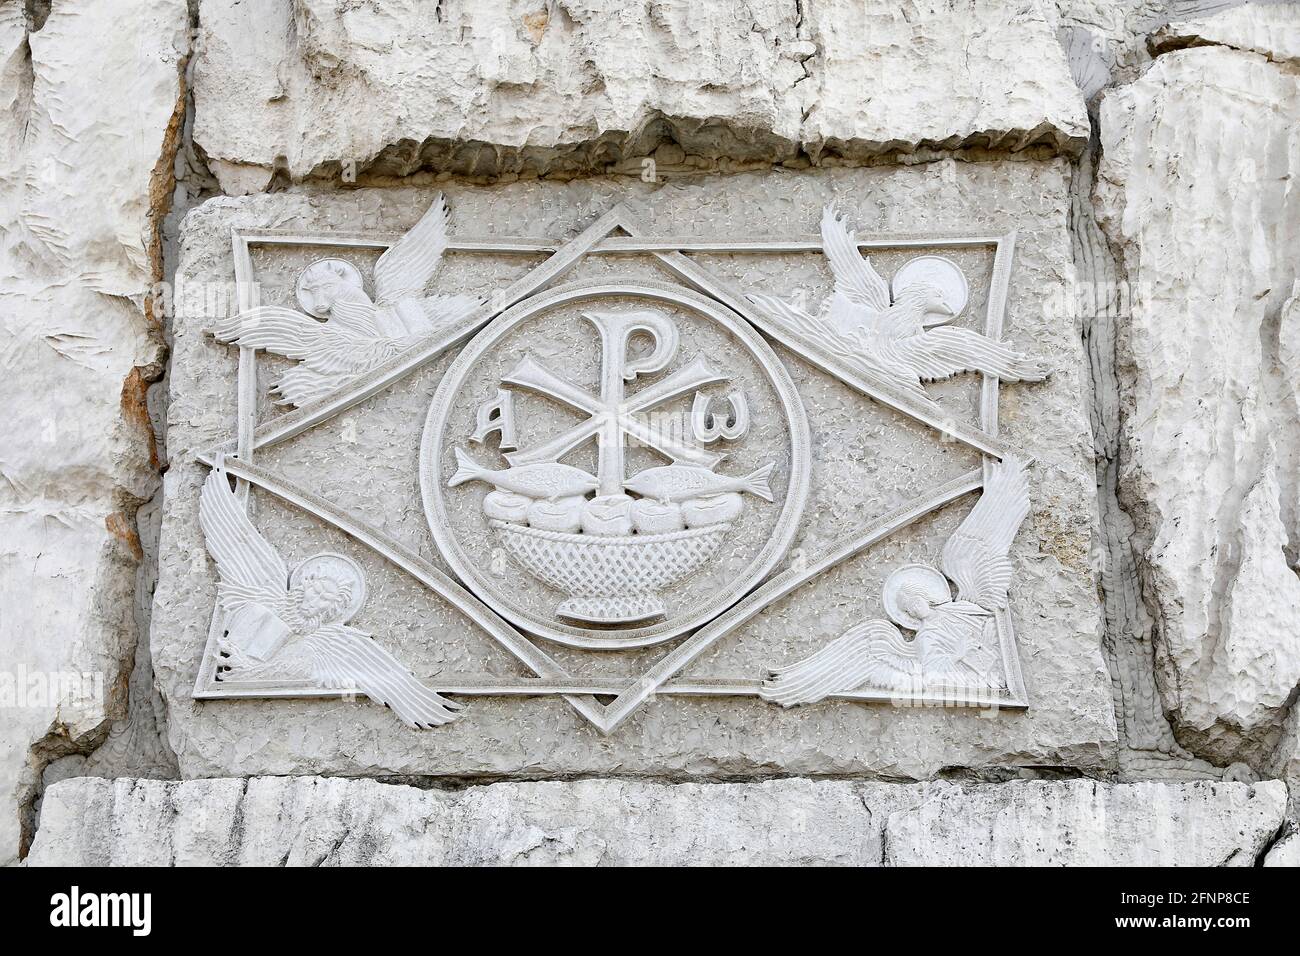 Risurrezione Cattedrale ortodossa, Podgorica, Montenegro. Rilievo con simboli cristiani Foto Stock